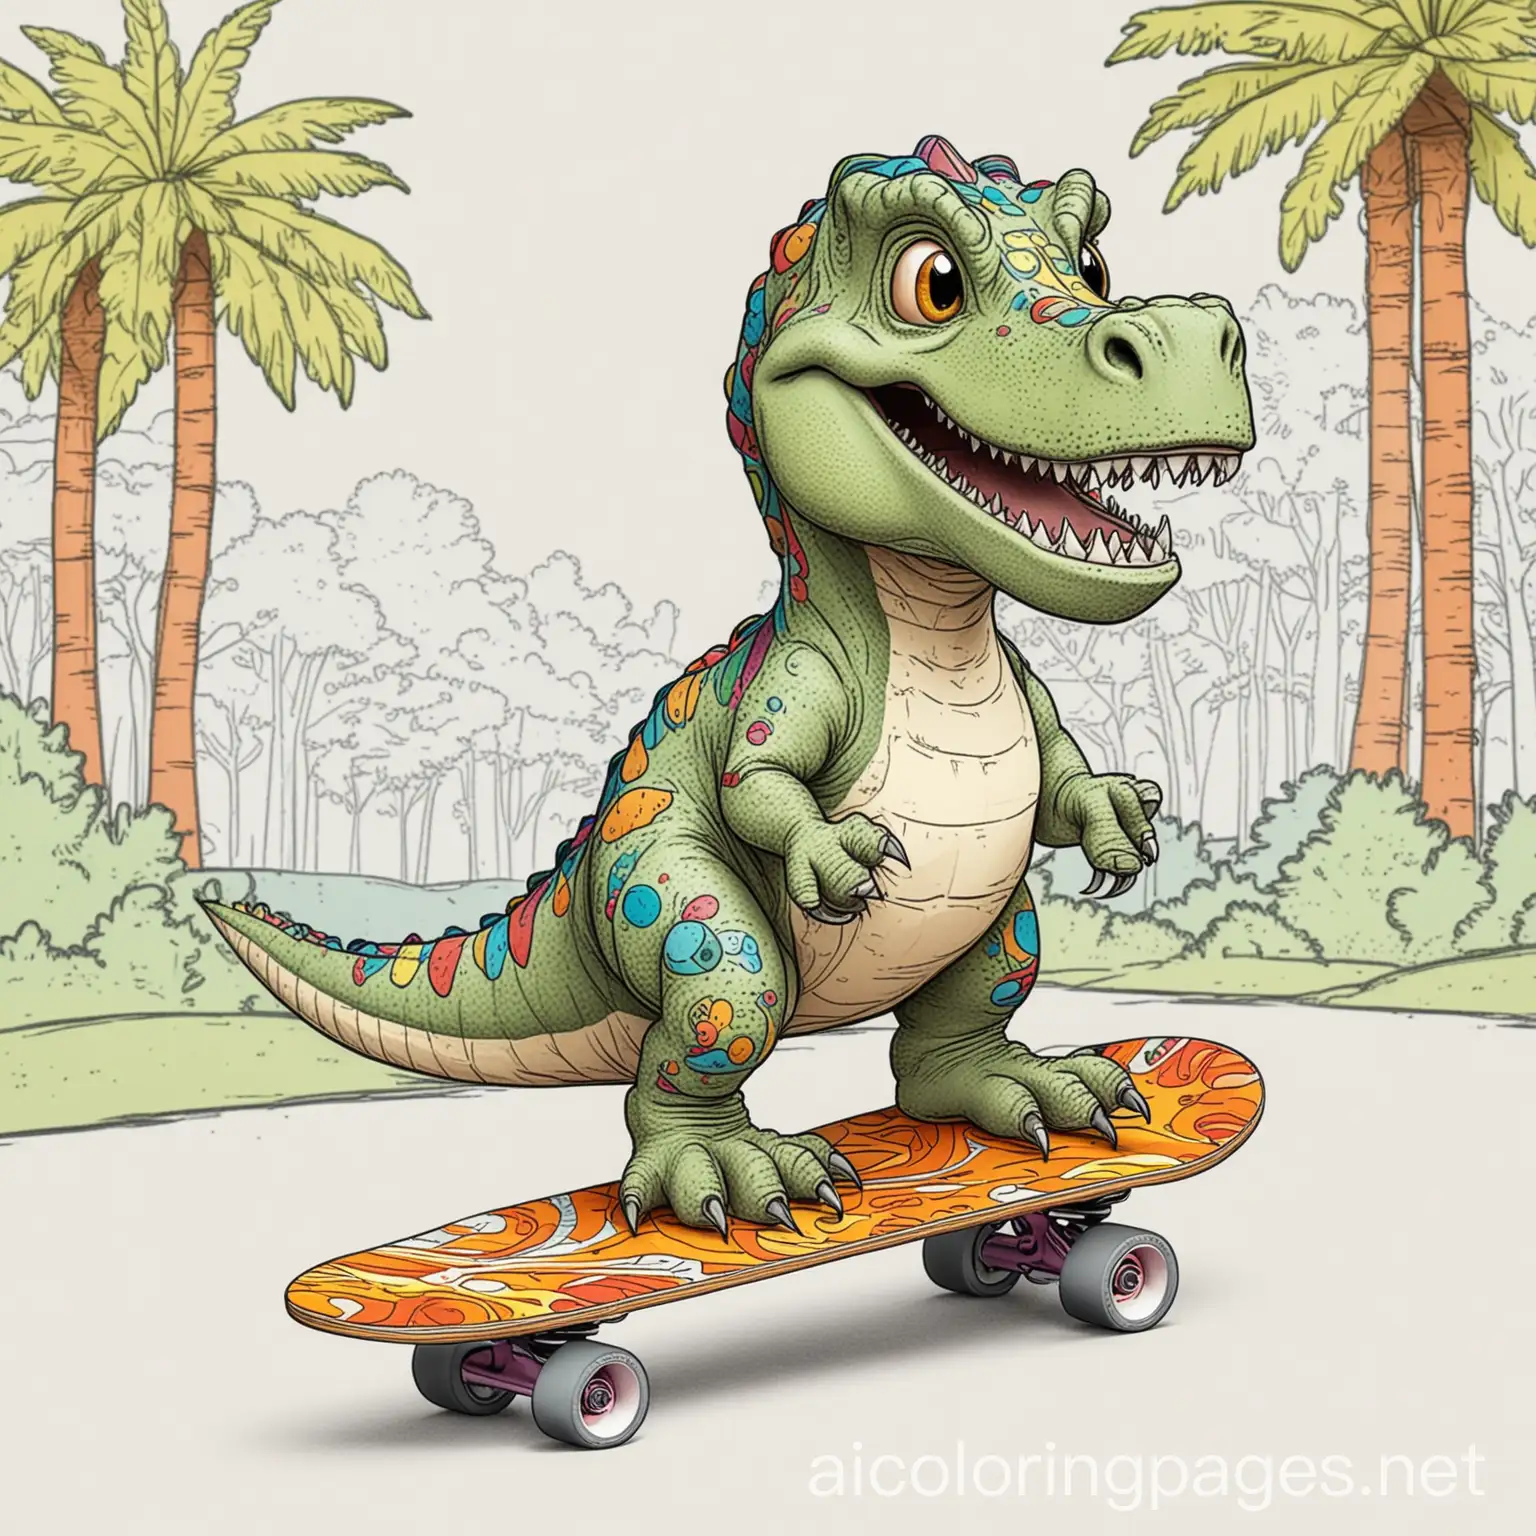 Smiling-Dinosaur-Skateboarding-in-a-Colorful-Park-Scene